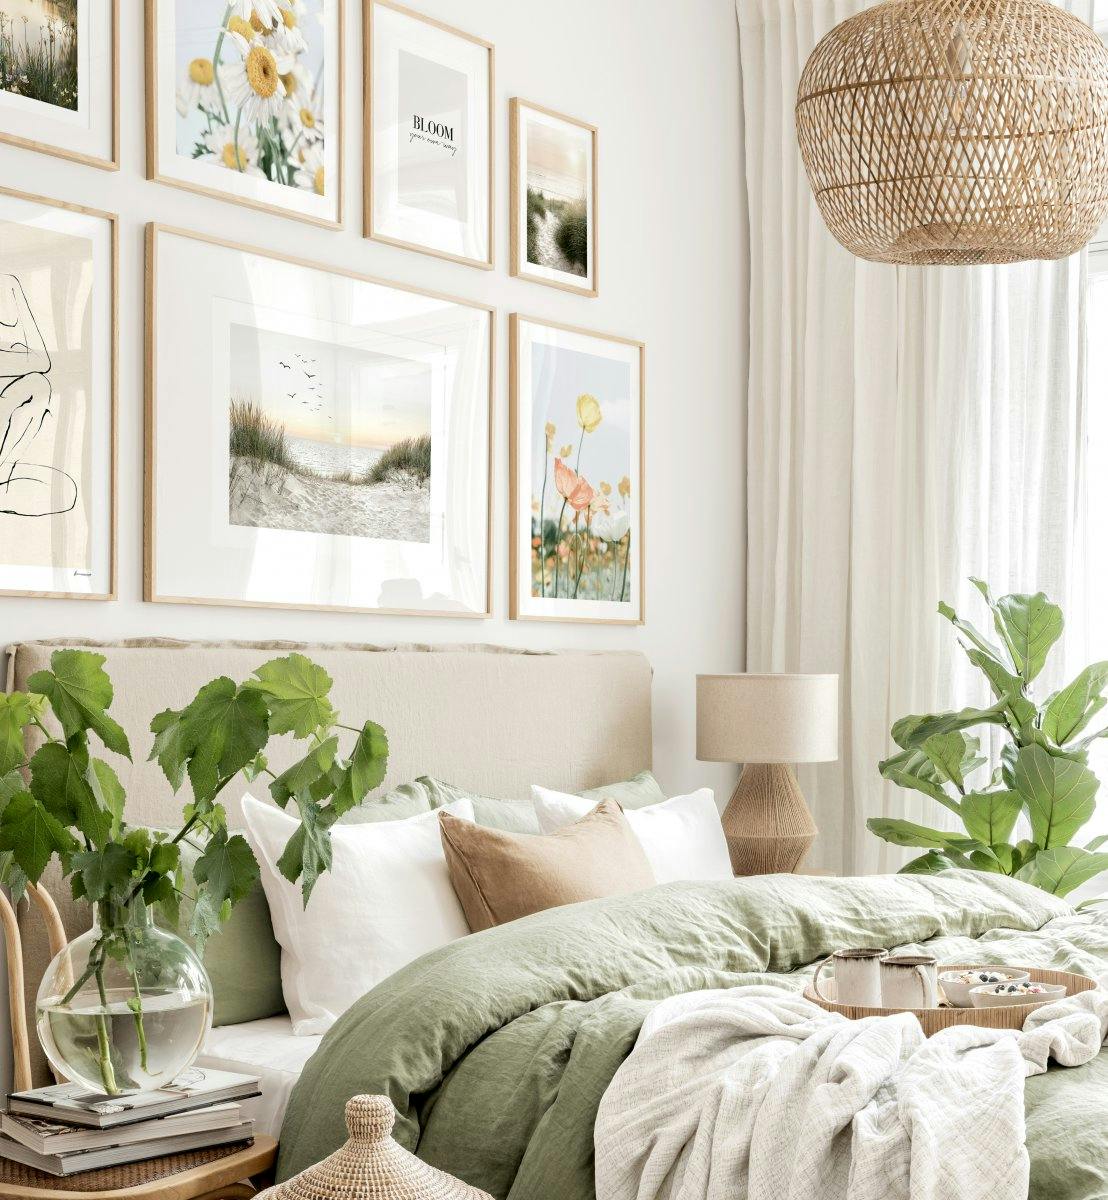 Parete della camera da letto con poster estivi di fiori e in tonalità verdi